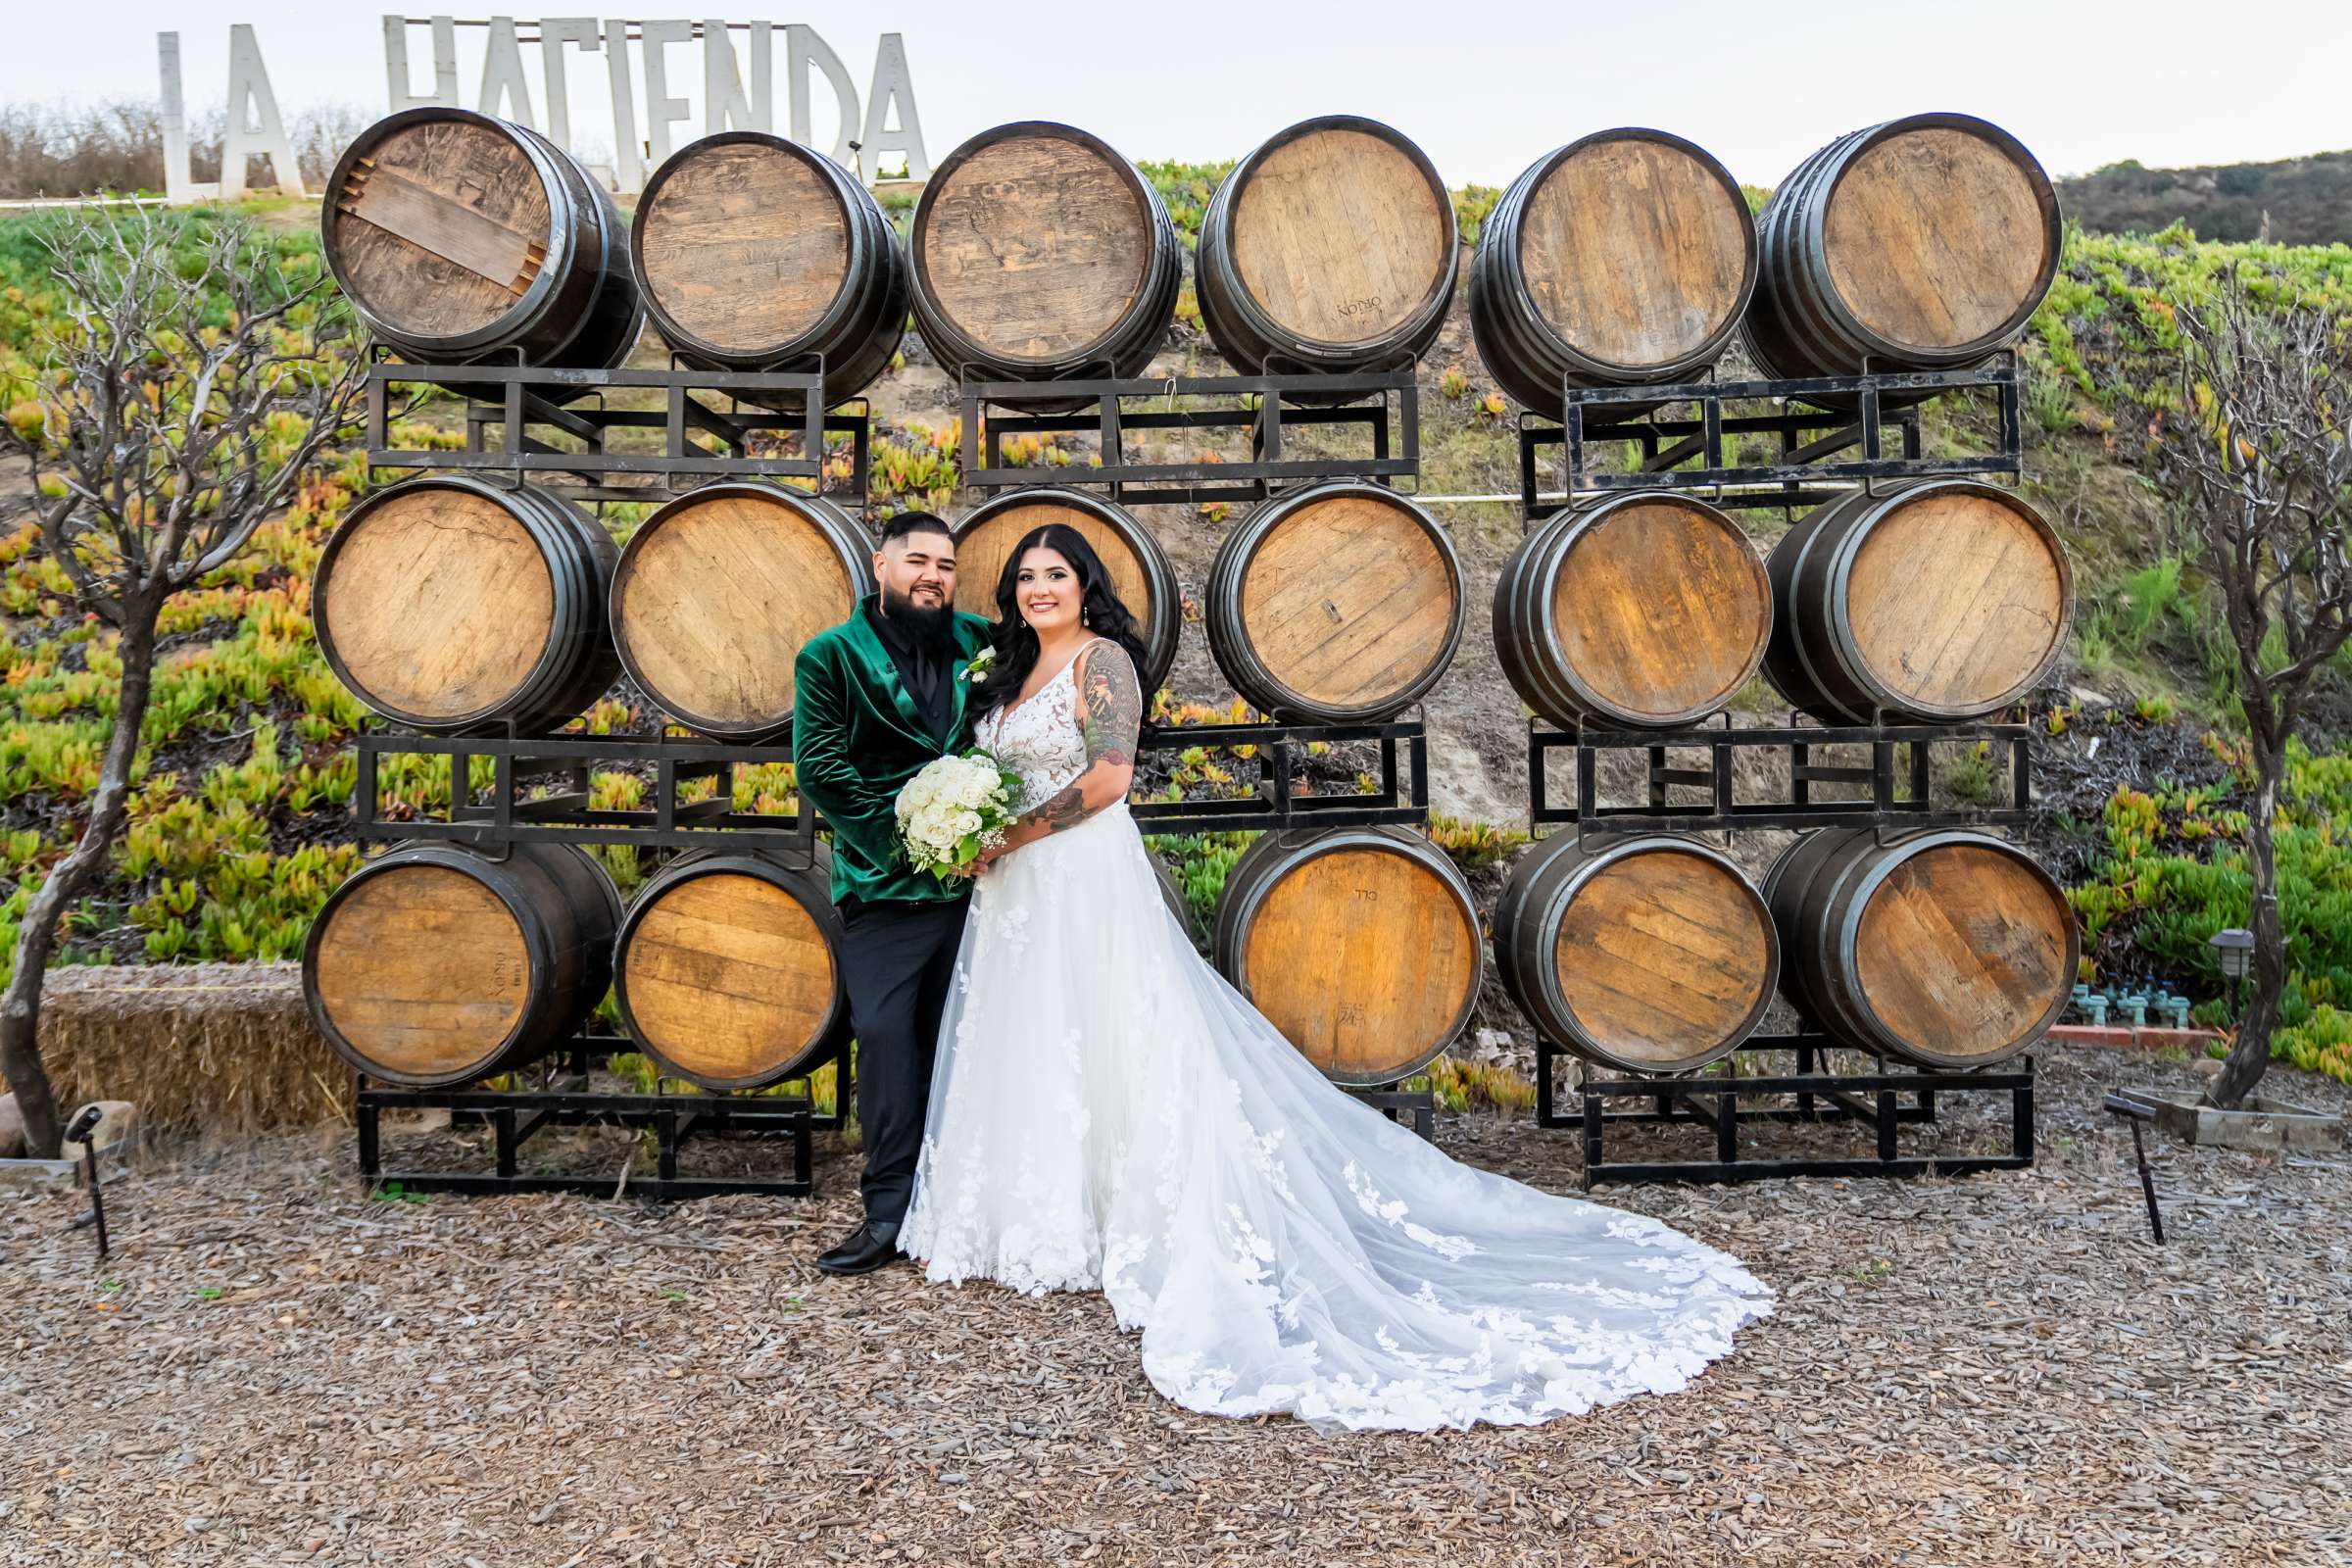 La Hacienda Wedding, Ashley and Alvaro Wedding Photo #6 by True Photography